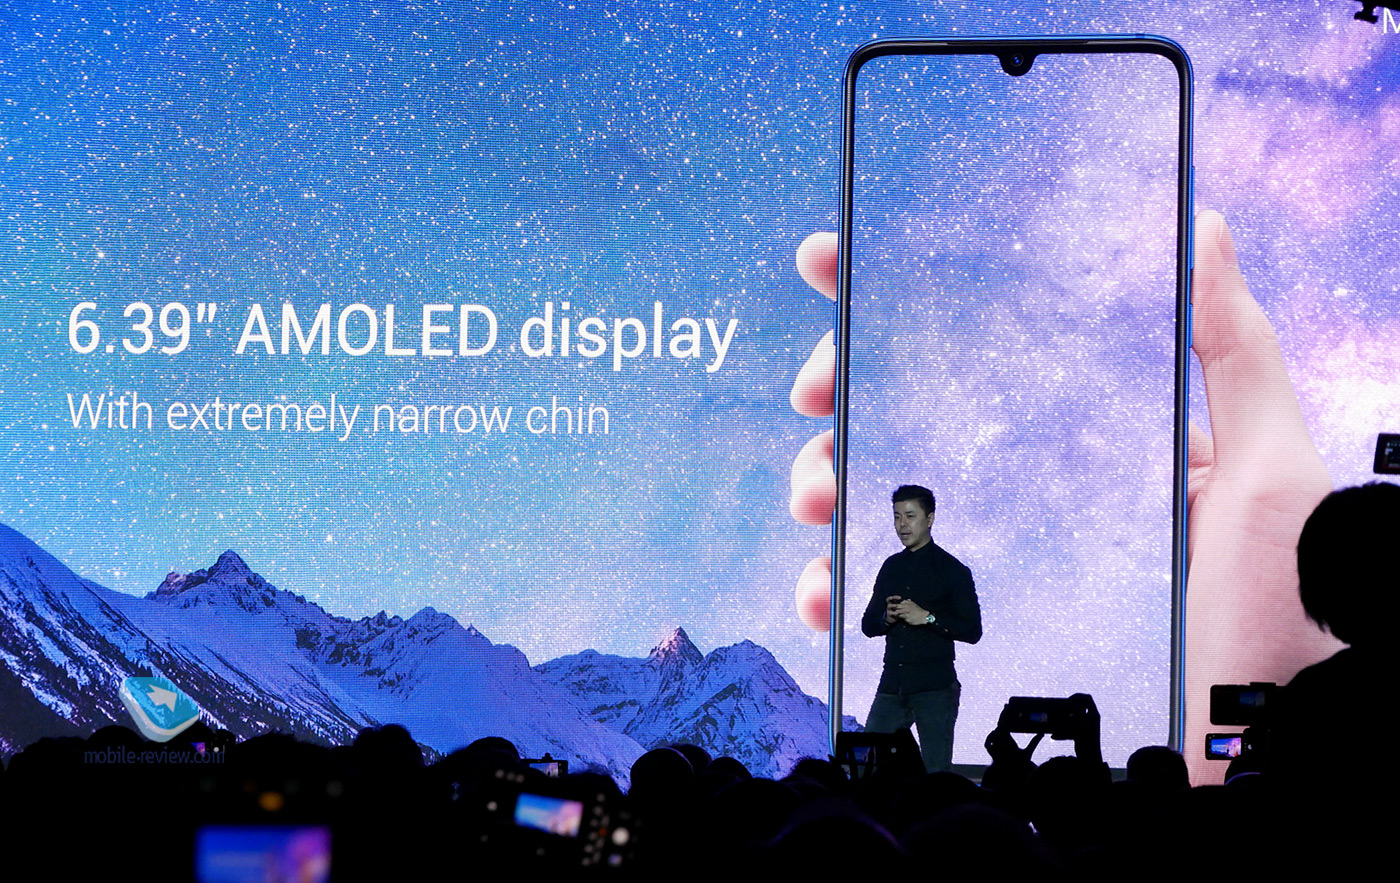 Презентация и первый взгляд на Xiaomi Mi9